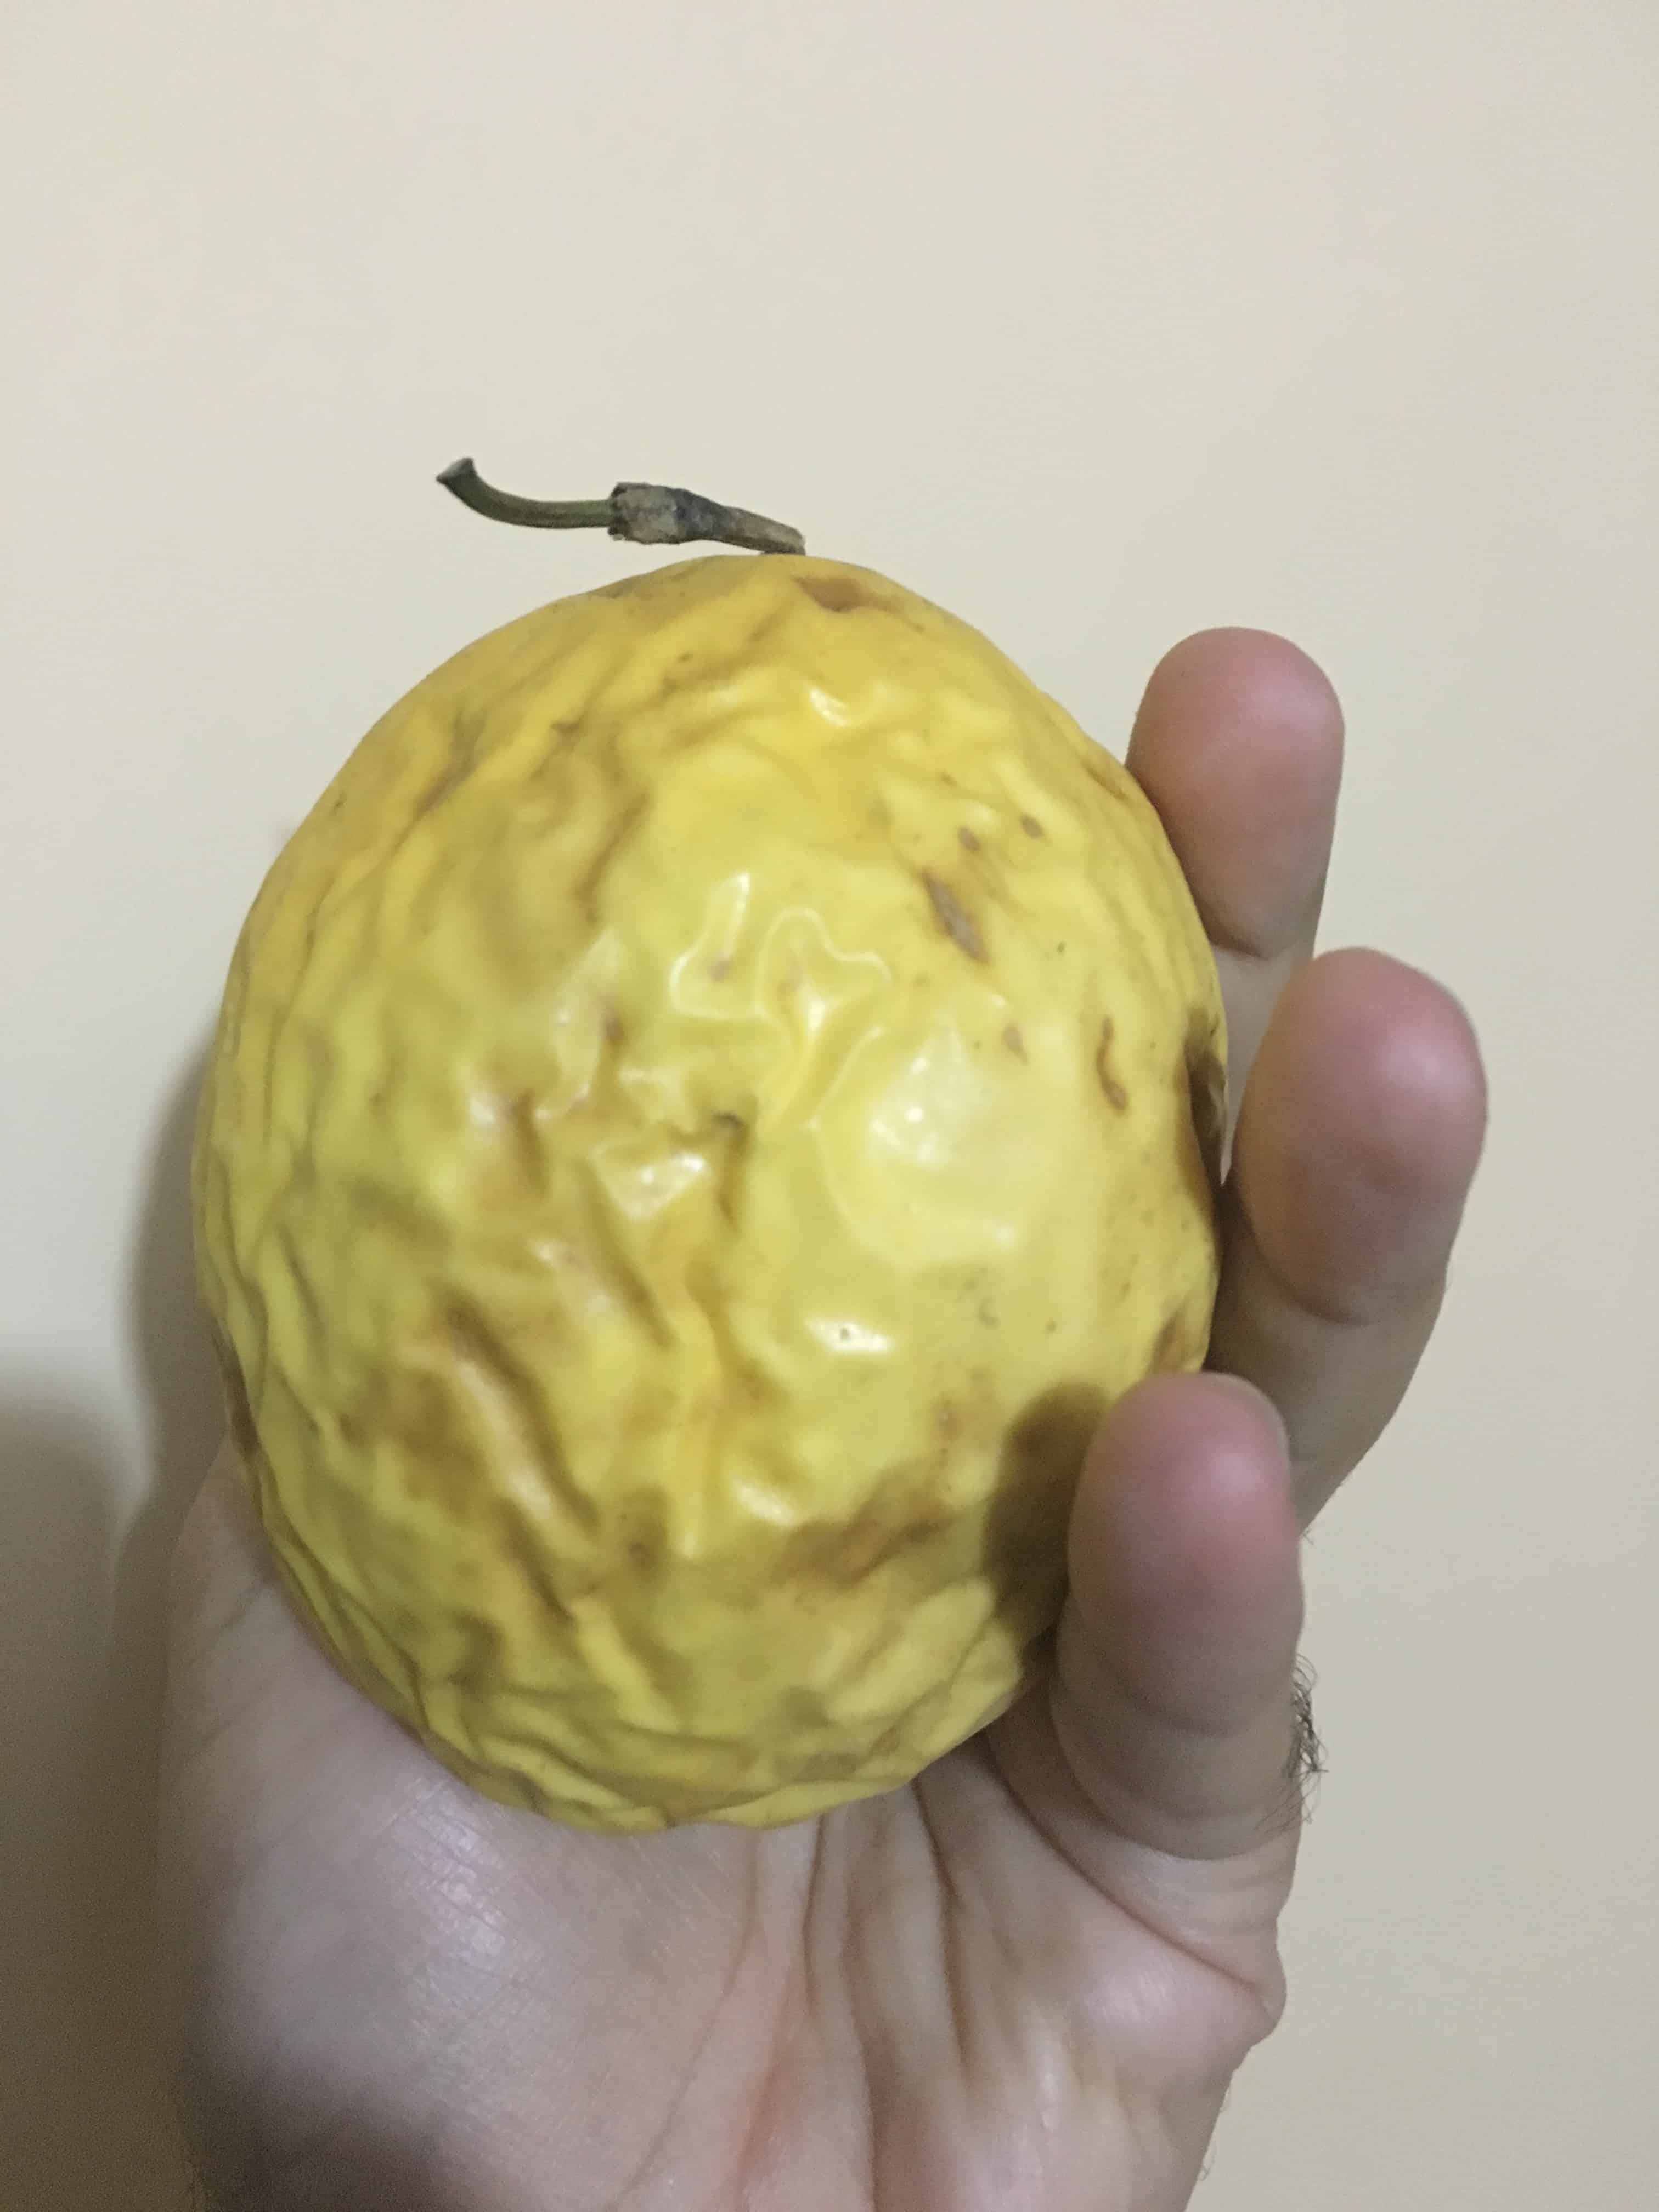 Maracuyá Fruit in Colombia